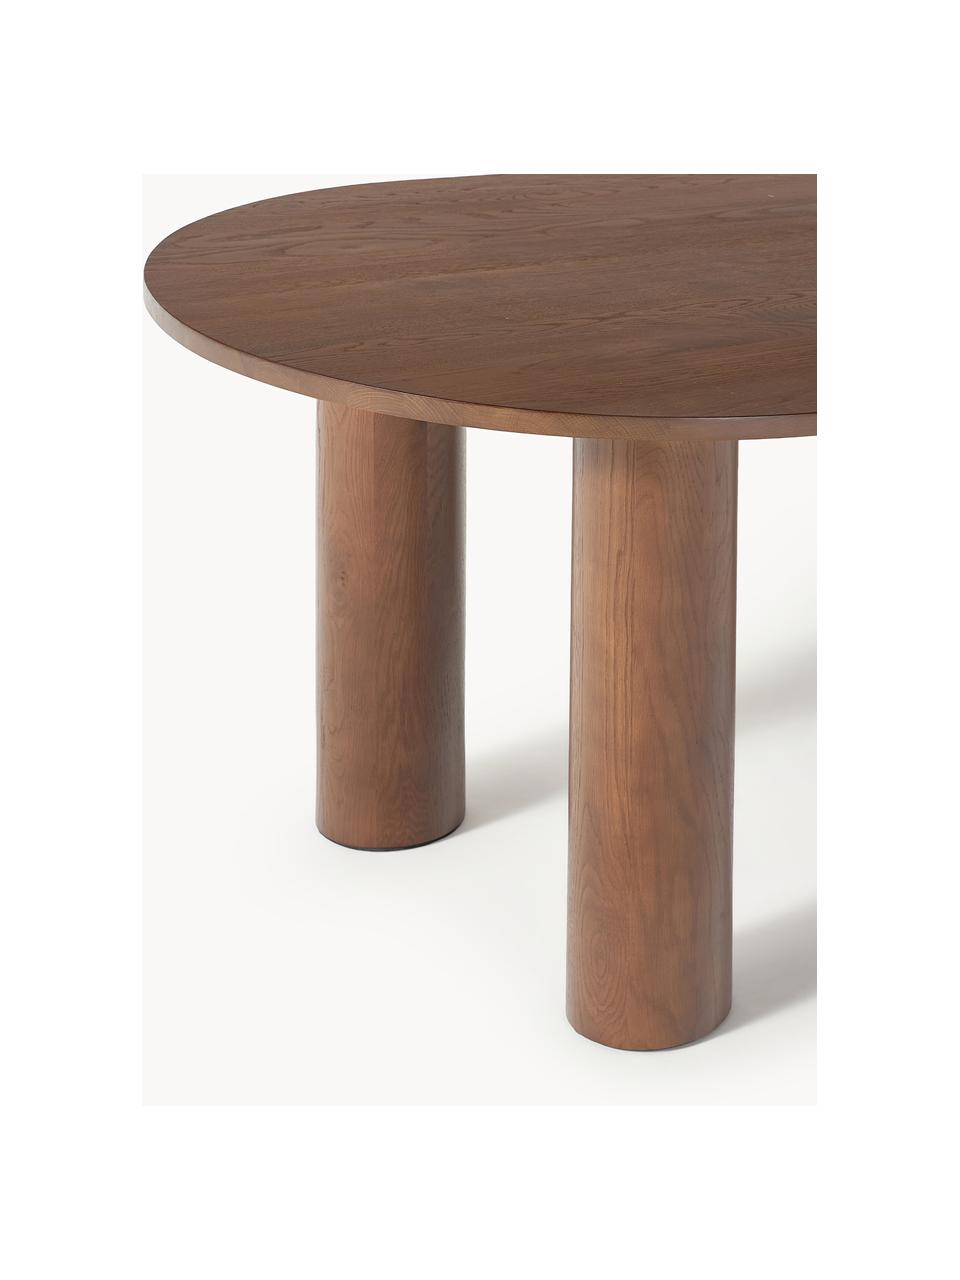 Oválný jídelní stůl z dubového dřeva Dunia, 180 x 110 cm, Masivní dubové dřevo, olejované

Tento produkt je vyroben z udržitelných zdrojů dřeva s certifikací FSC®., Dubové dřevo, tmavě olejované, Š 180 cm, H 110 cm